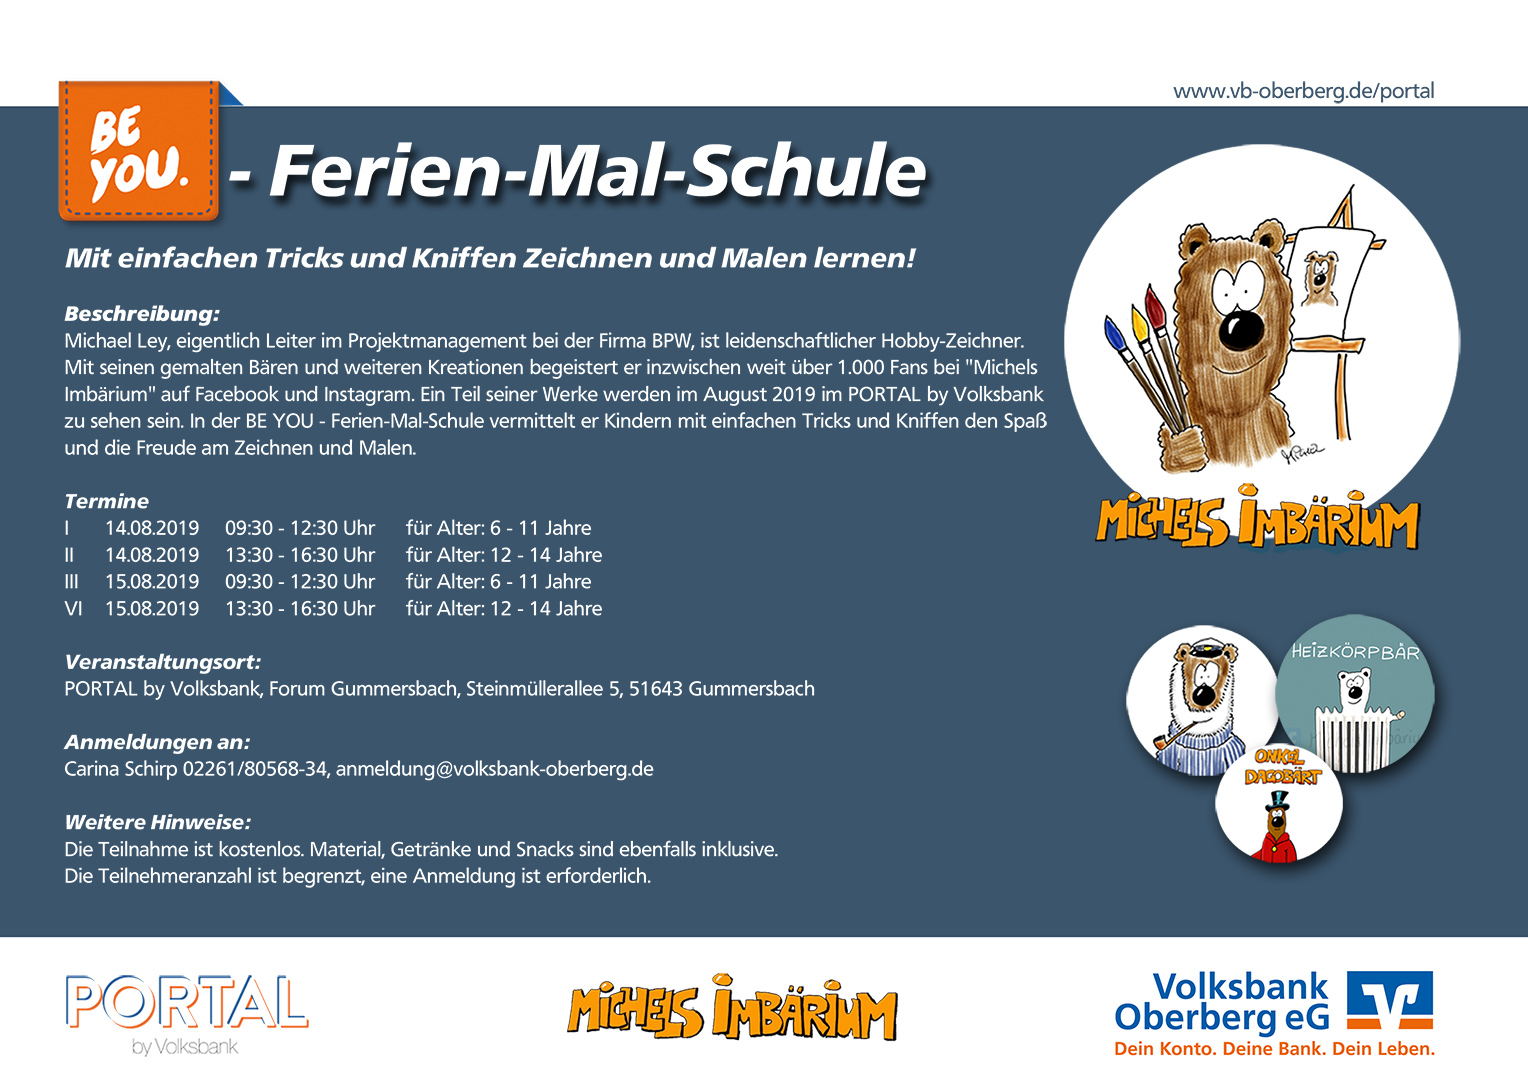 PORTAL by Volksbank | Ferien-Mal-Schule